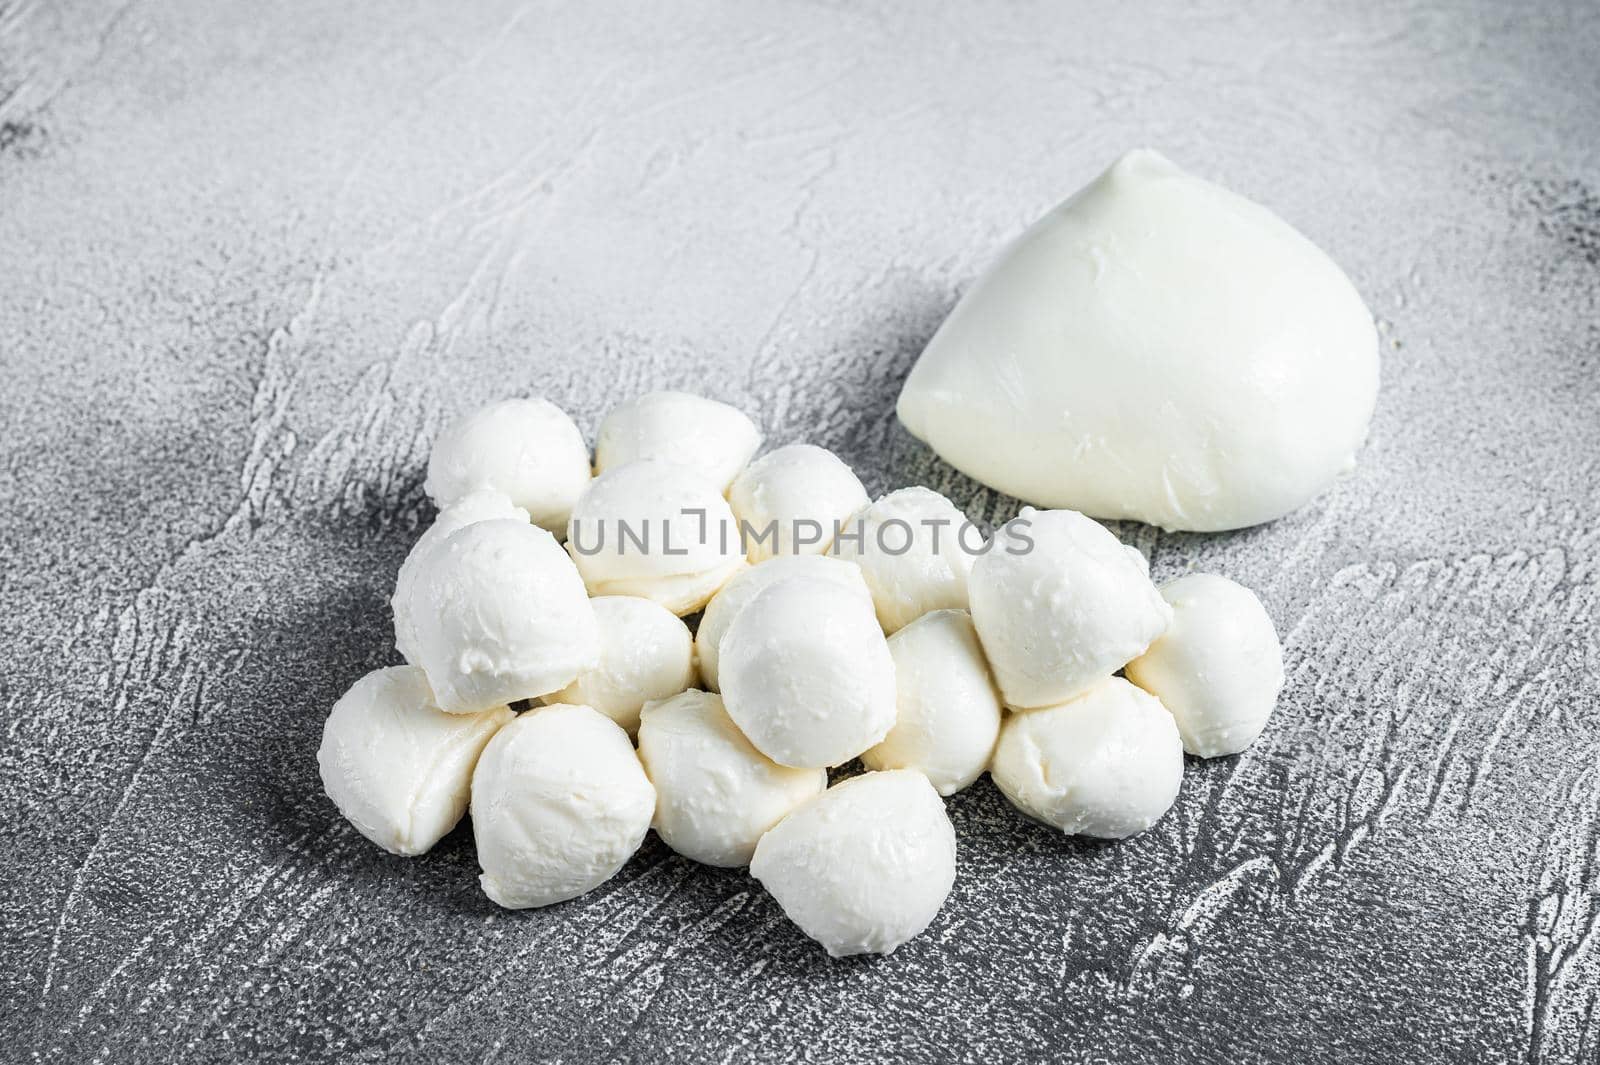 Mozzarella cheese mini balls on kitchen table. White background. Top view.